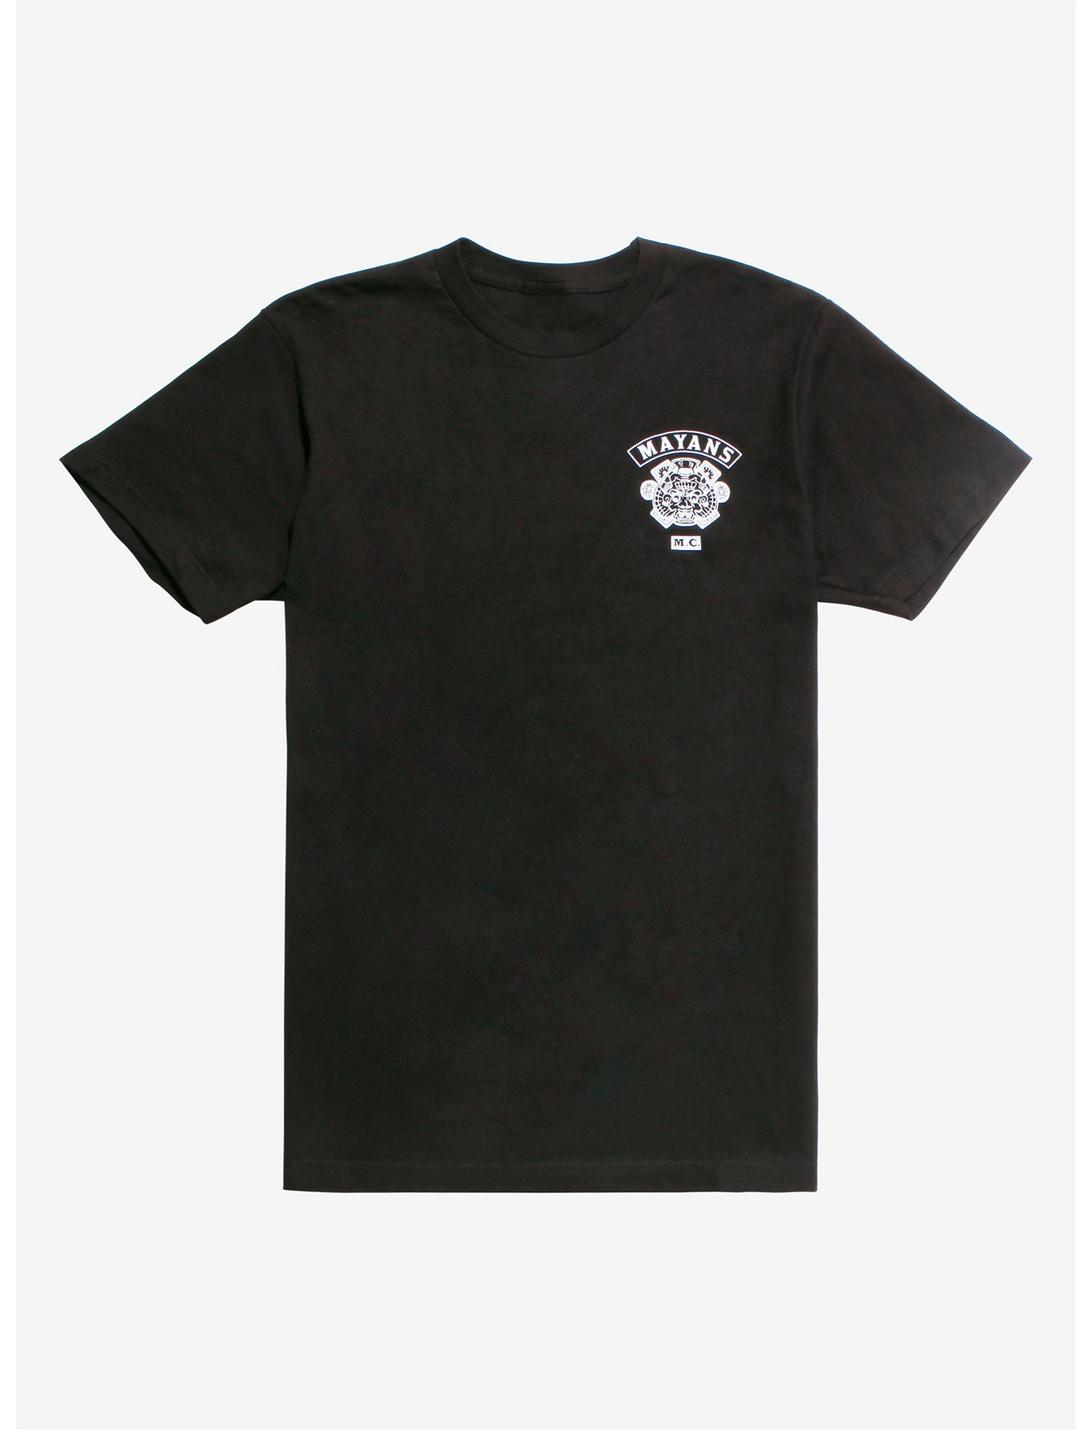 Mayans M.C. Logo T-Shirt, BLACK, hi-res